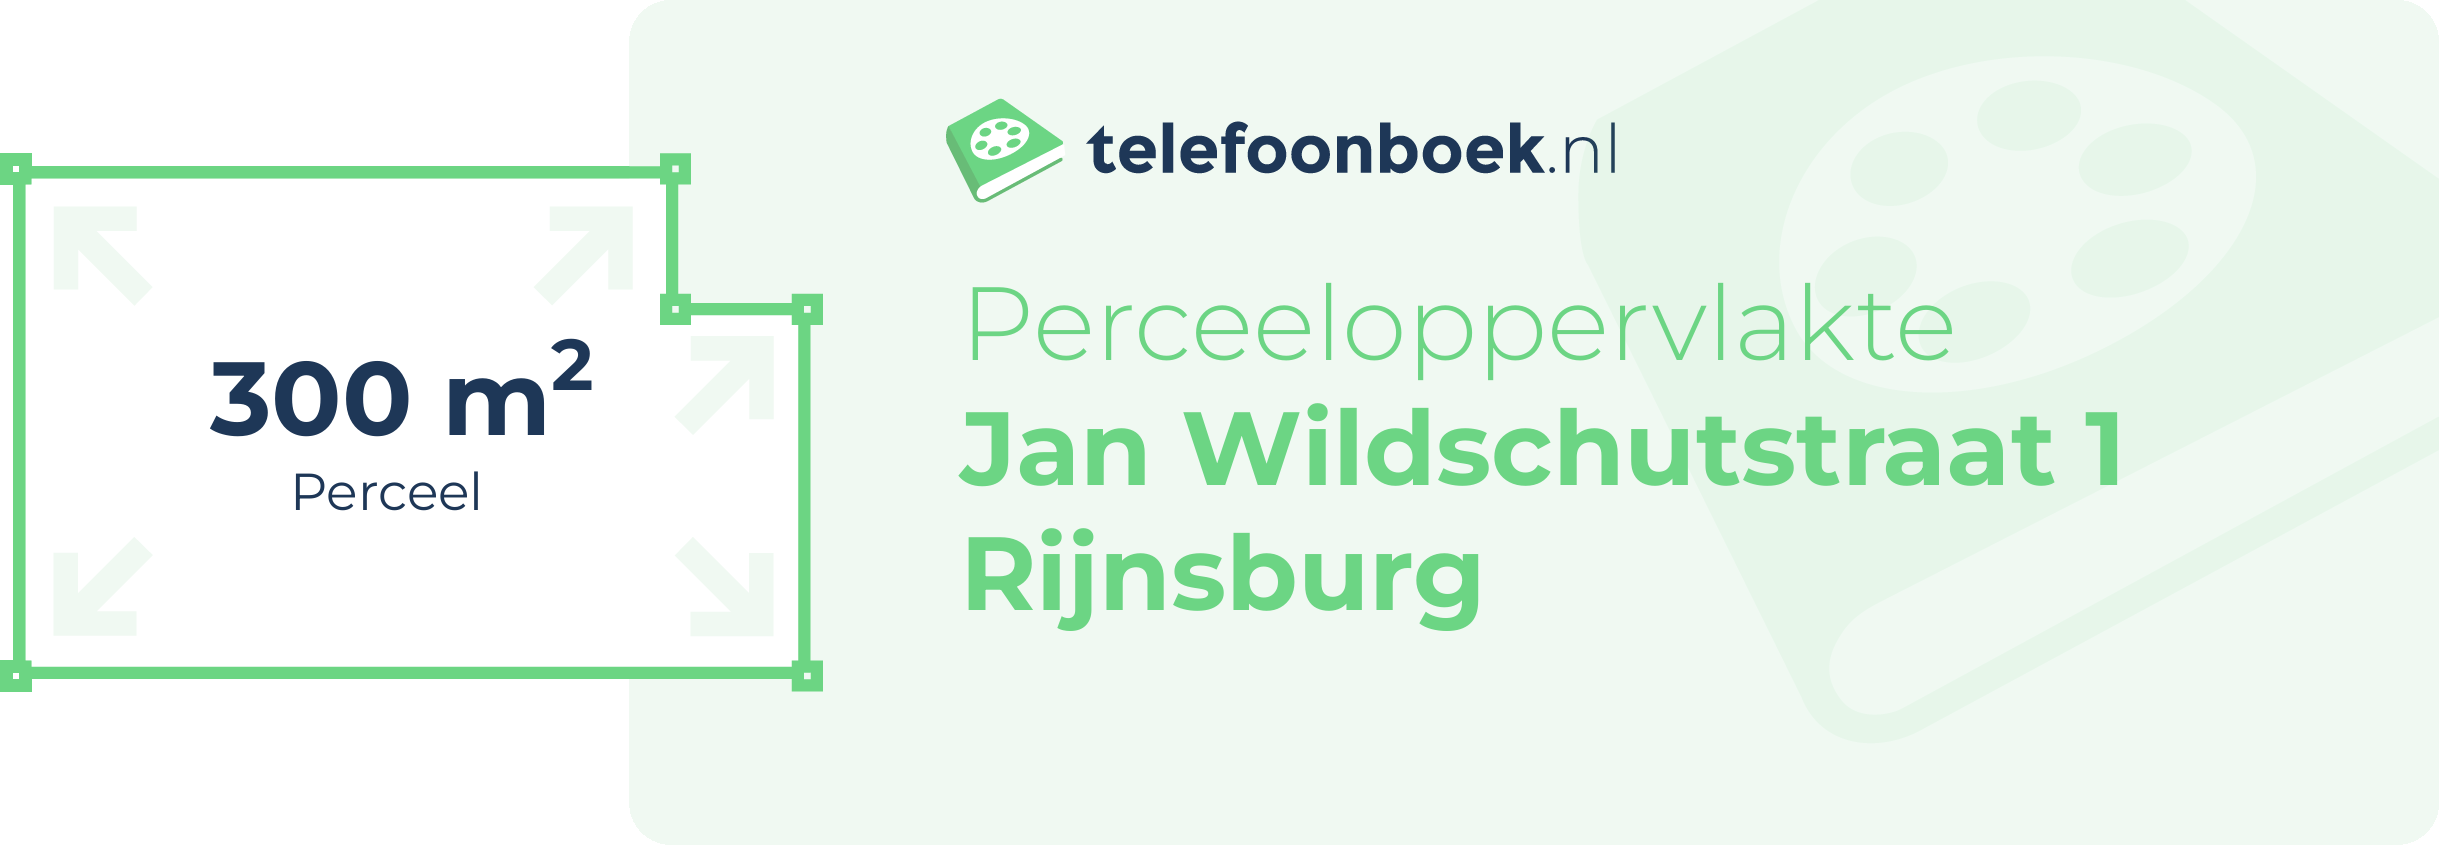 Perceeloppervlakte Jan Wildschutstraat 1 Rijnsburg